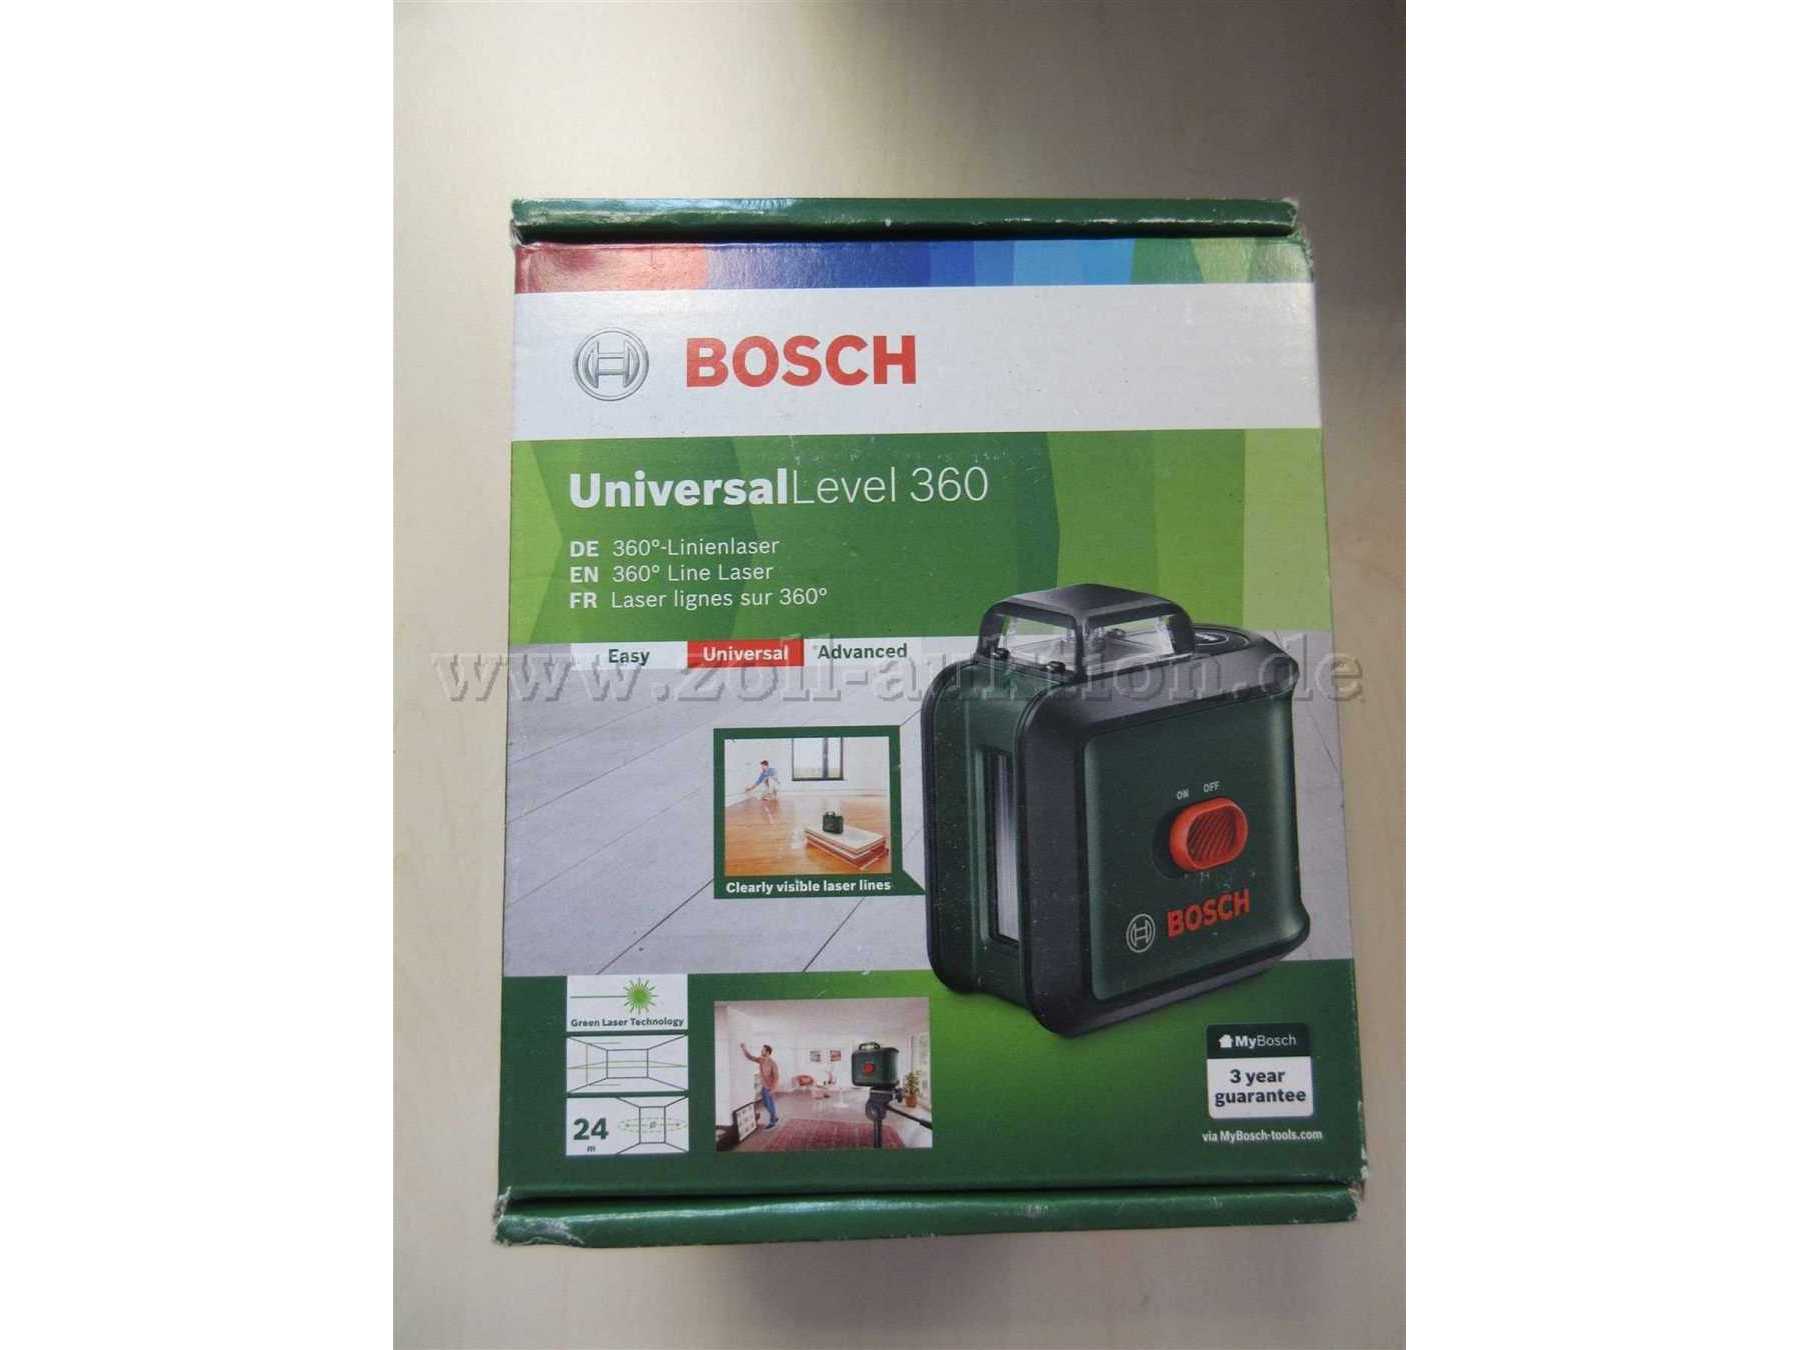 Bosch Level 360 Karton Vorderseite